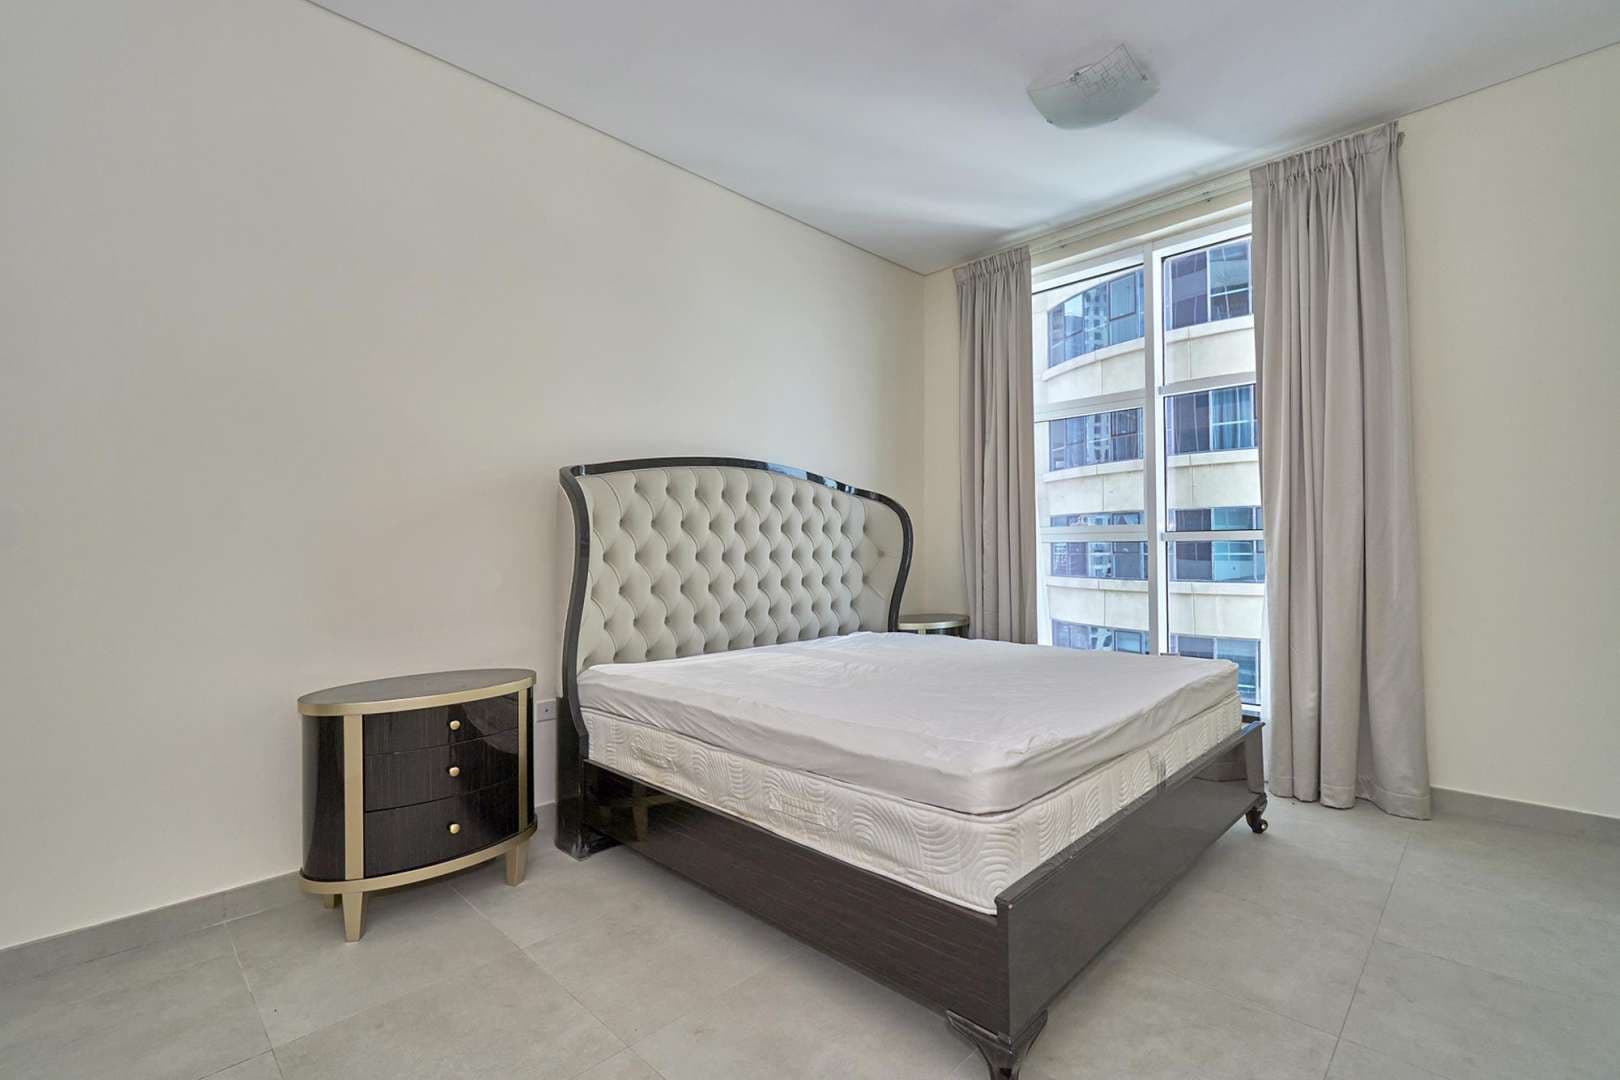 2 Bedroom Apartment For Rent Marina Arcade Lp08178 8394c6d7d8c2f80.jpg